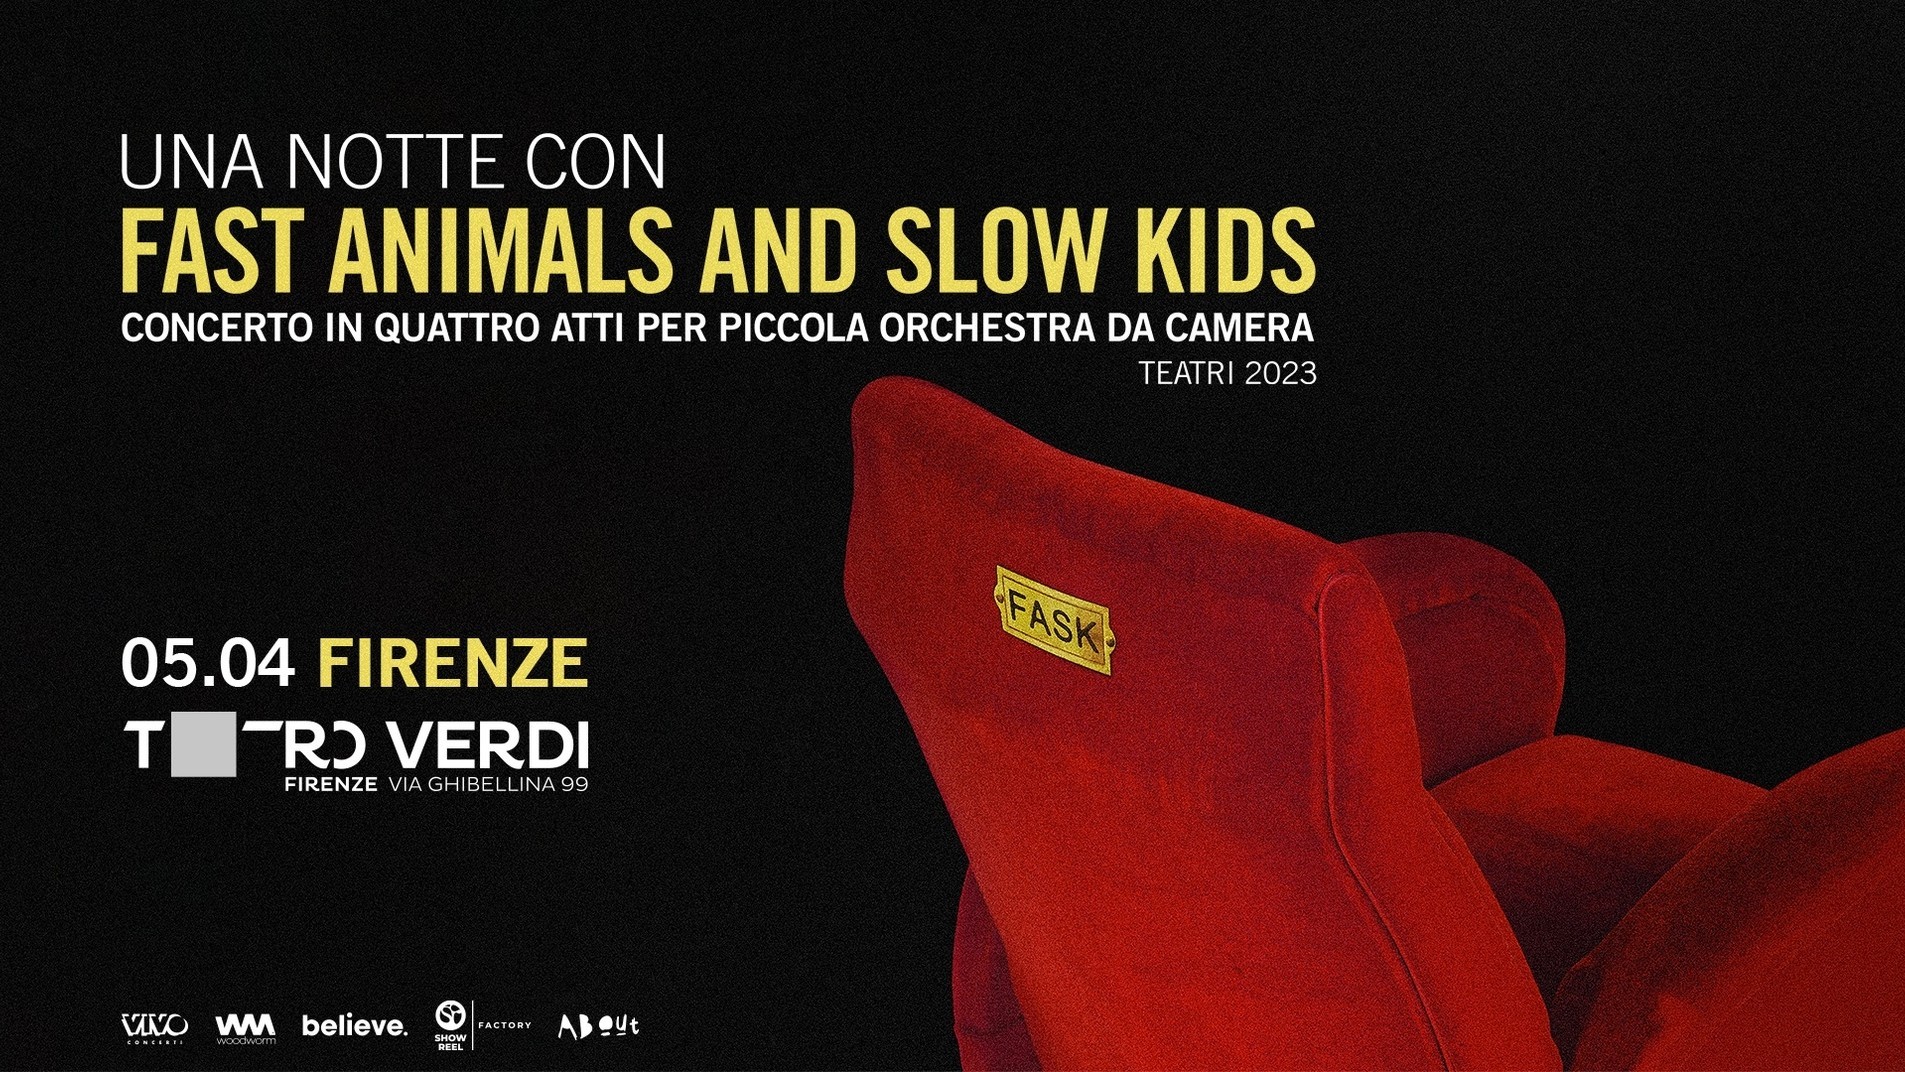 Fast Animals and Slow Kids - Concerto in 4 atti per piccola orchestra da camera